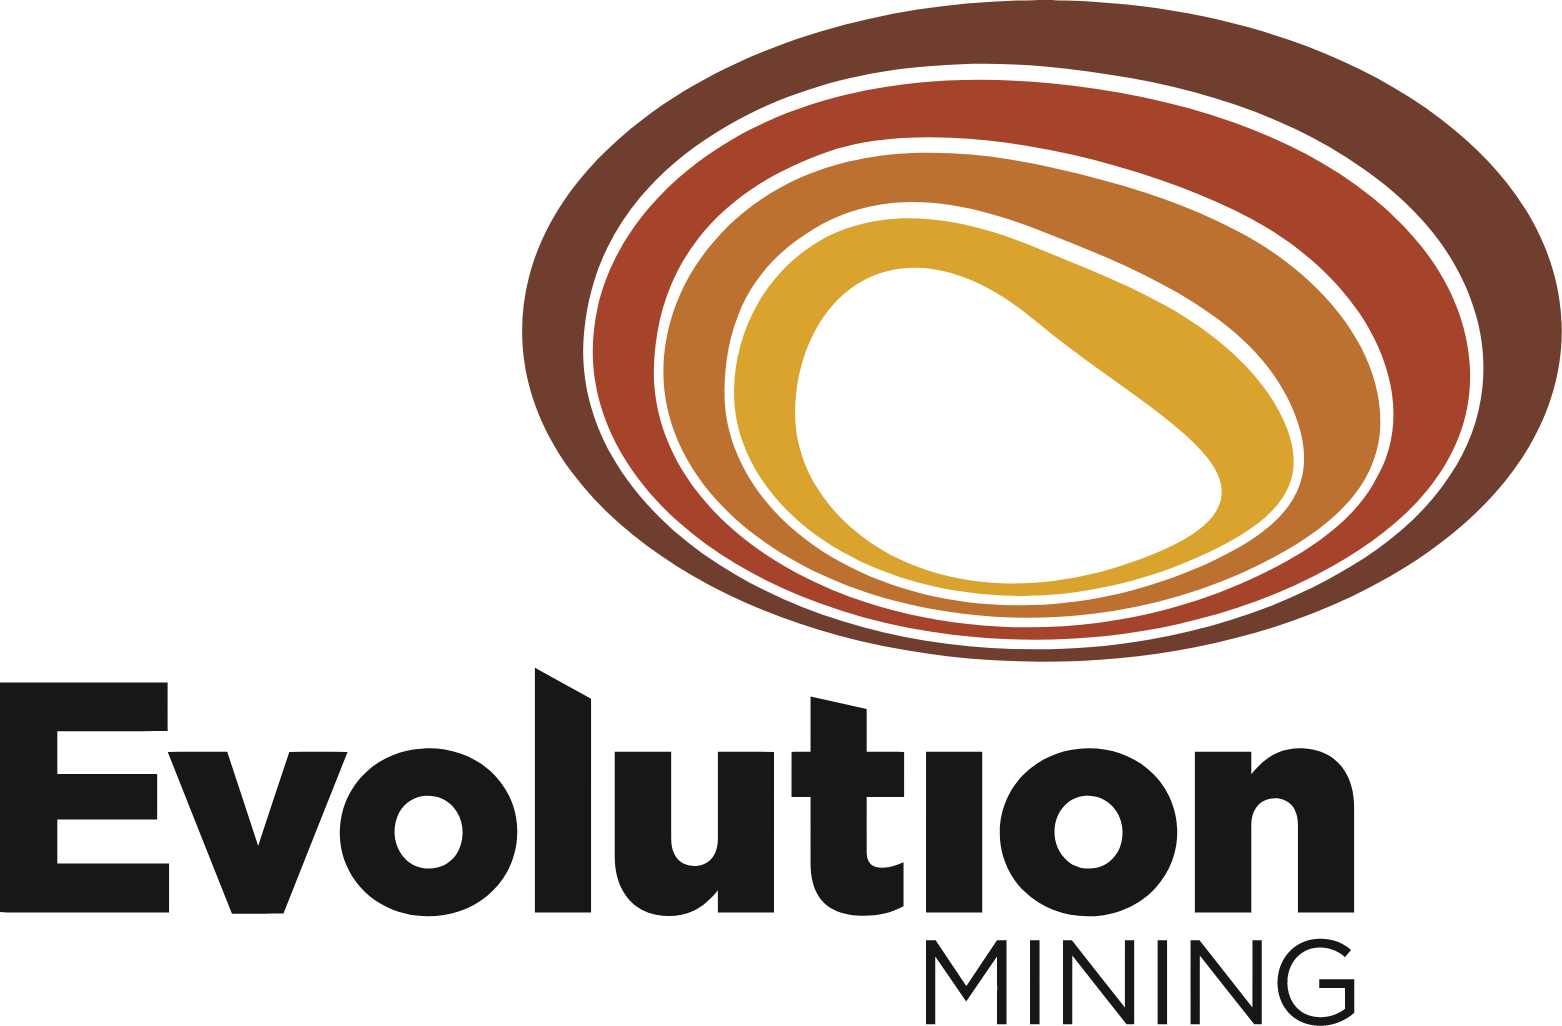 Mining Gold Logo | ? logo, Gold logo, Mining logo